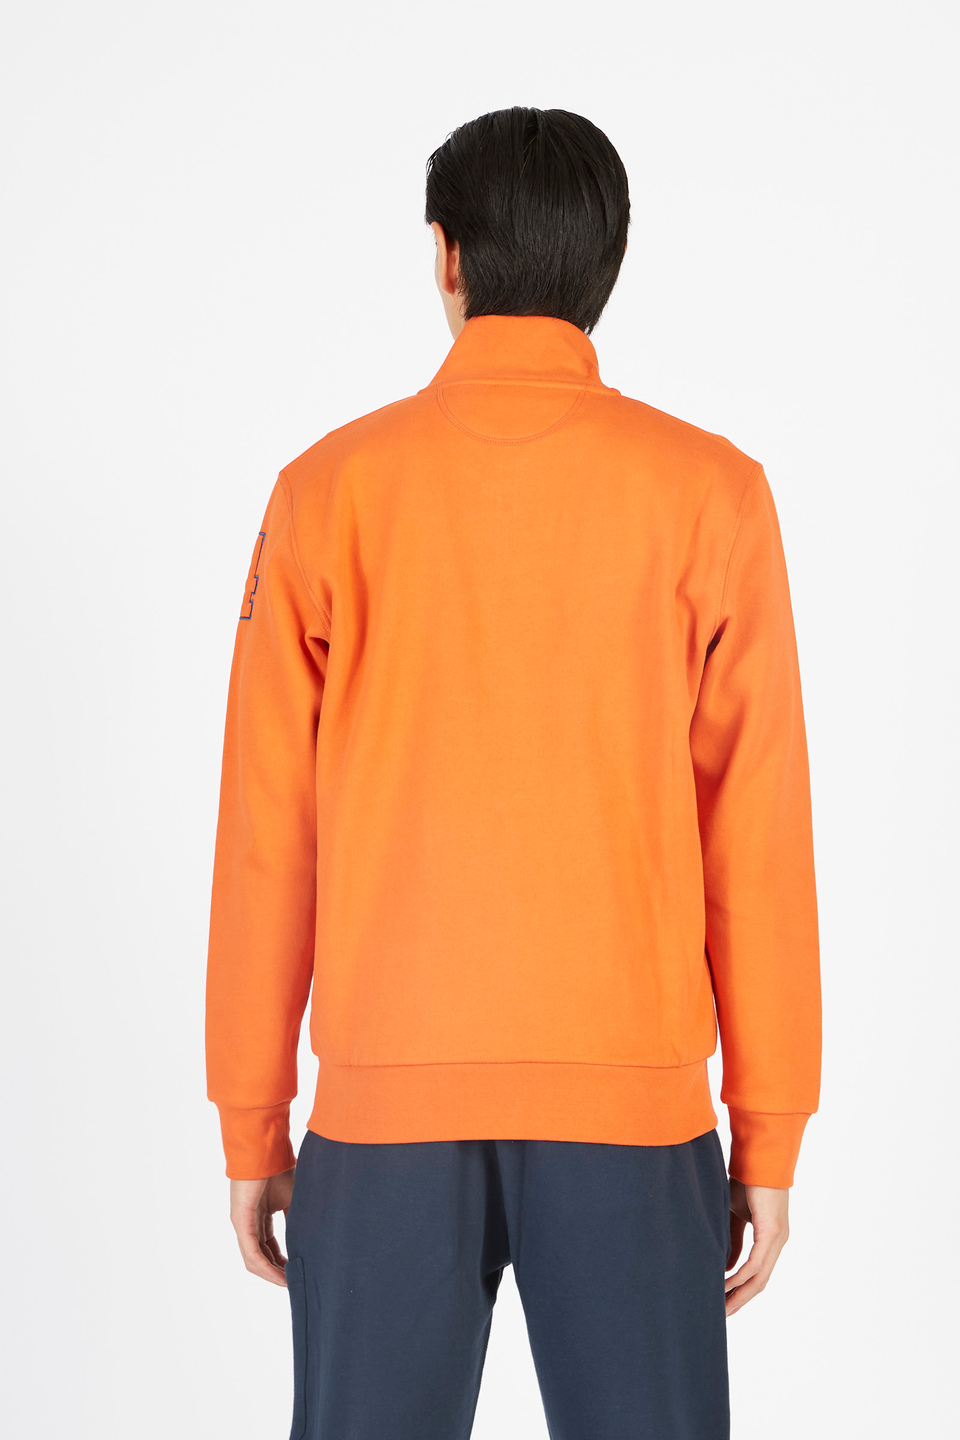 Herren-Sweatshirt aus Baumwoll-Mix in Regular Fit | La Martina - Official Online Shop